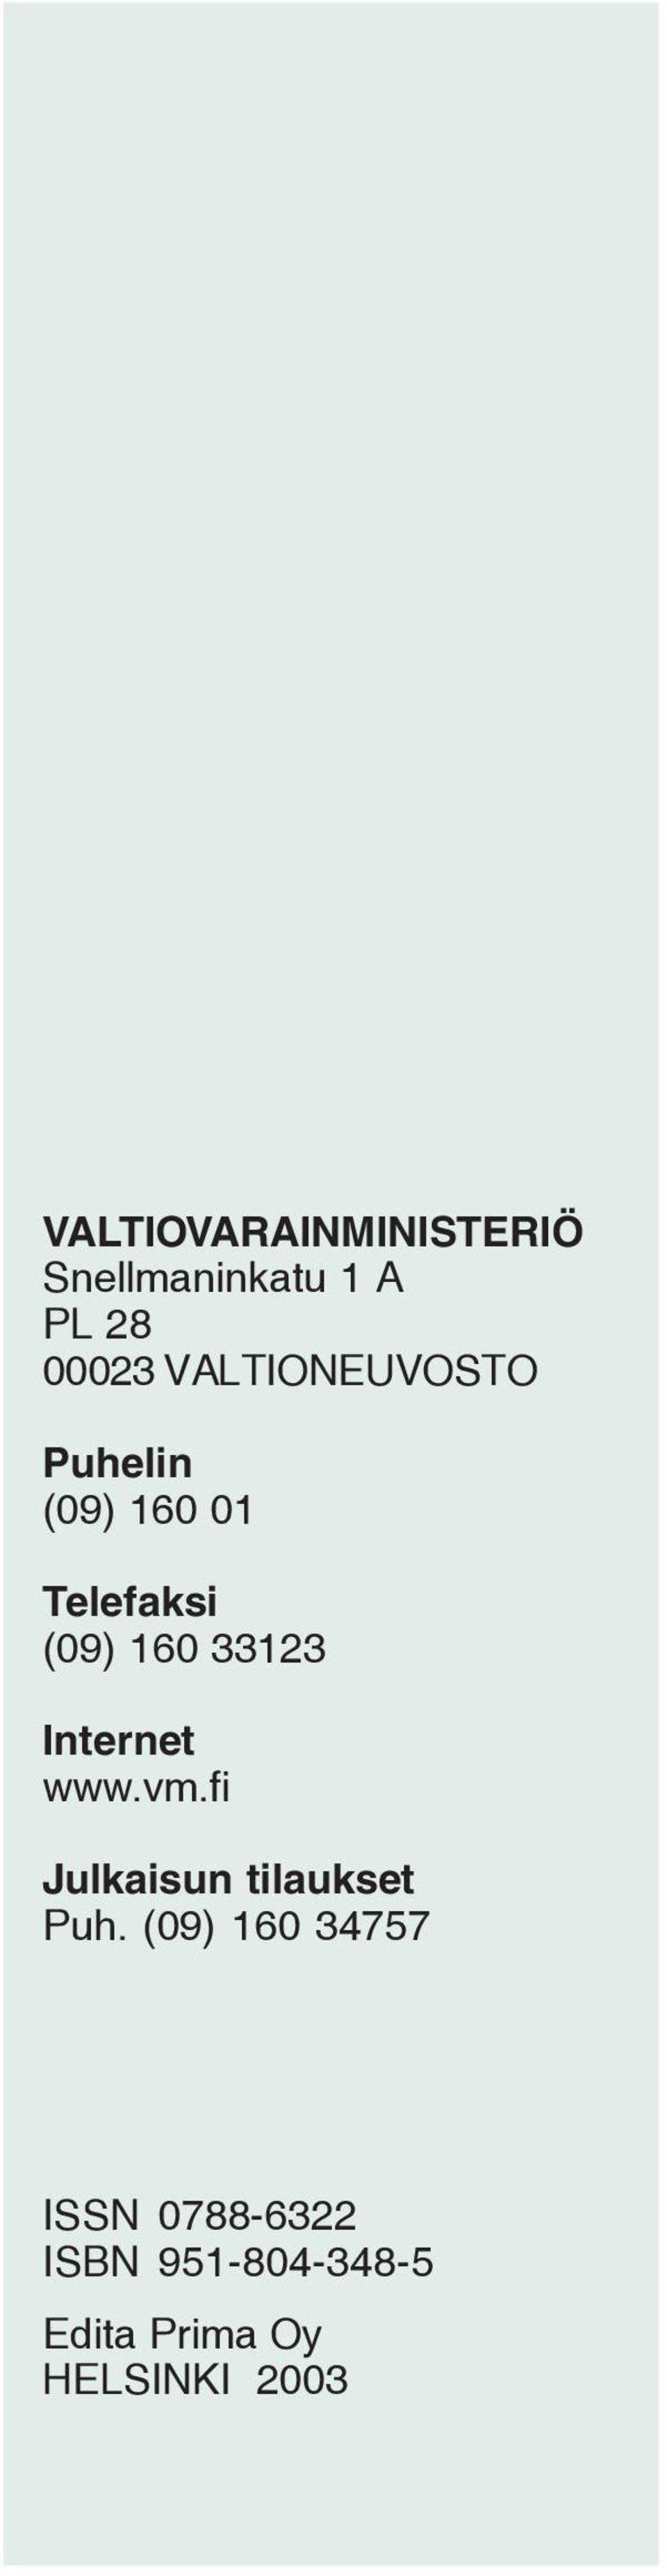 33123 Internet www.vm.fi Julkaisun tilaukset Puh.